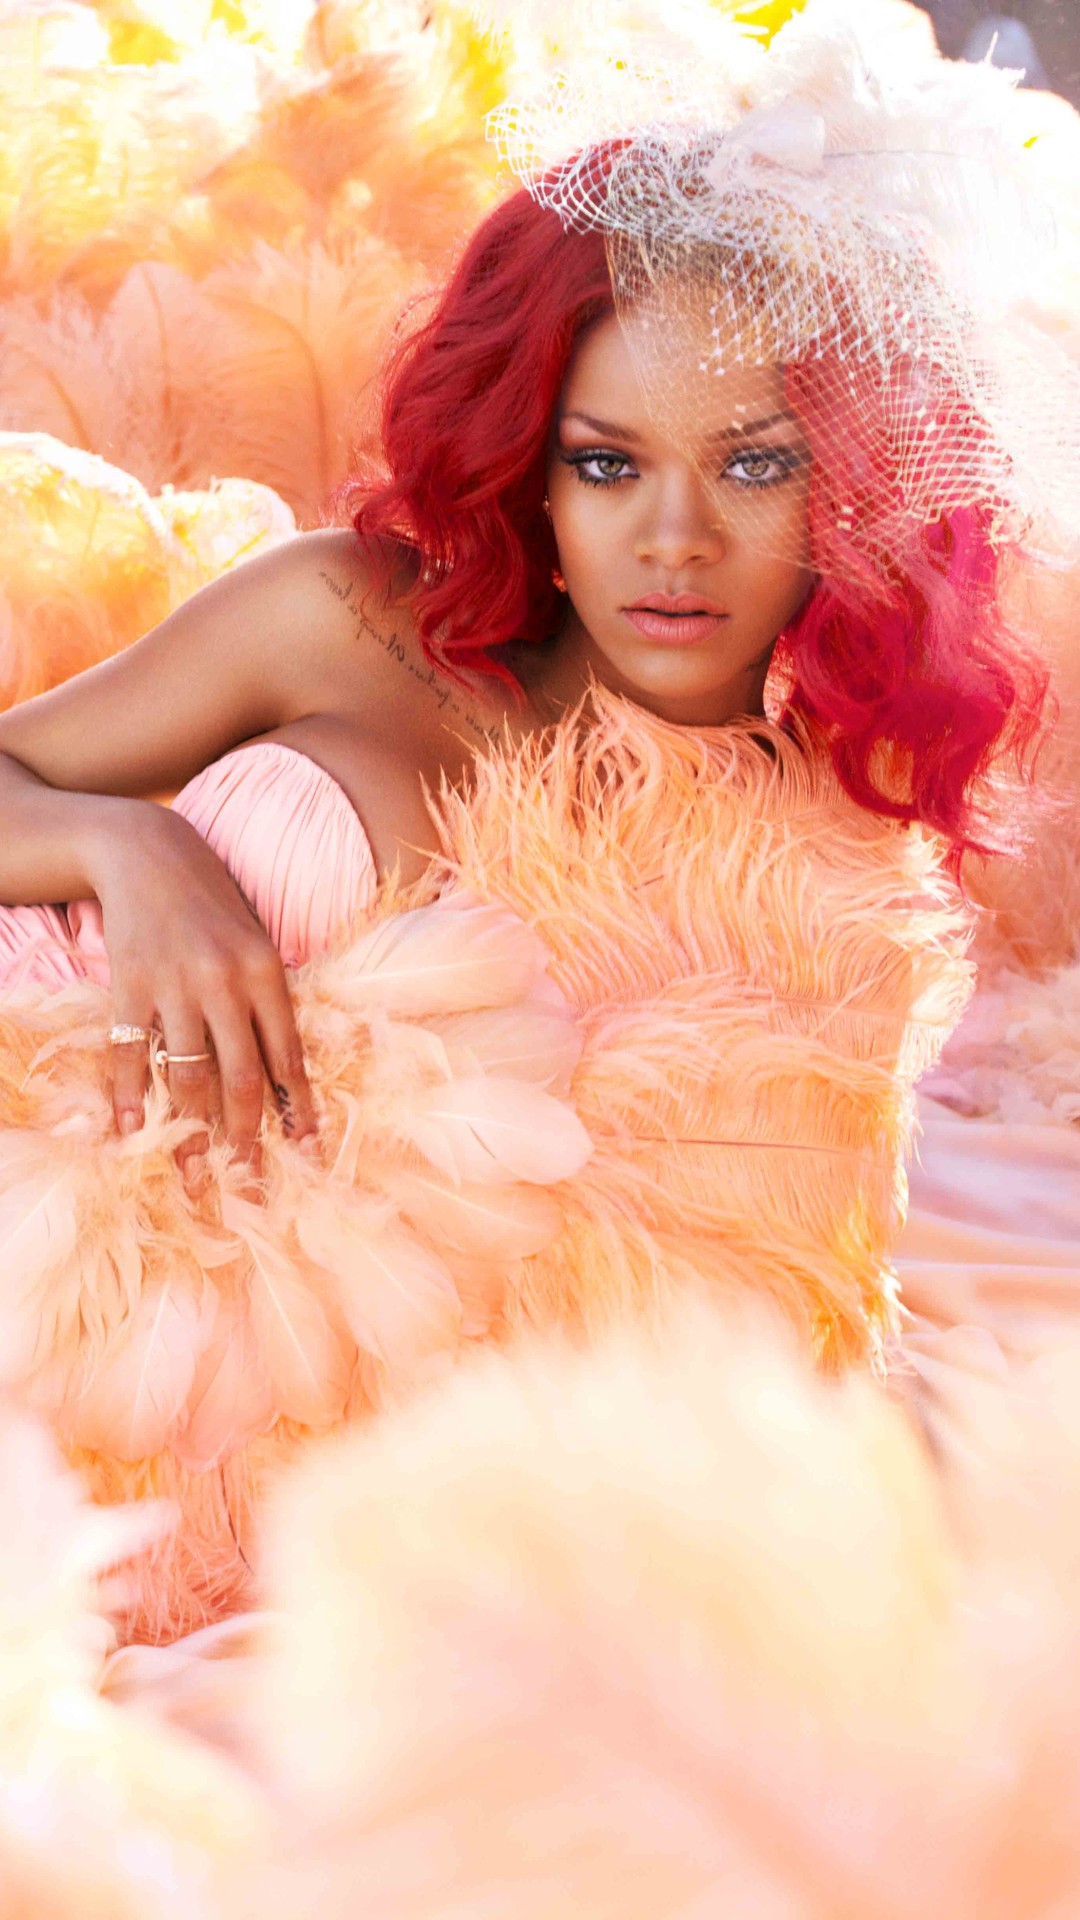 Descarga gratuita de fondo de pantalla para móvil de Música, Rihanna, Cantante, Barbadense.